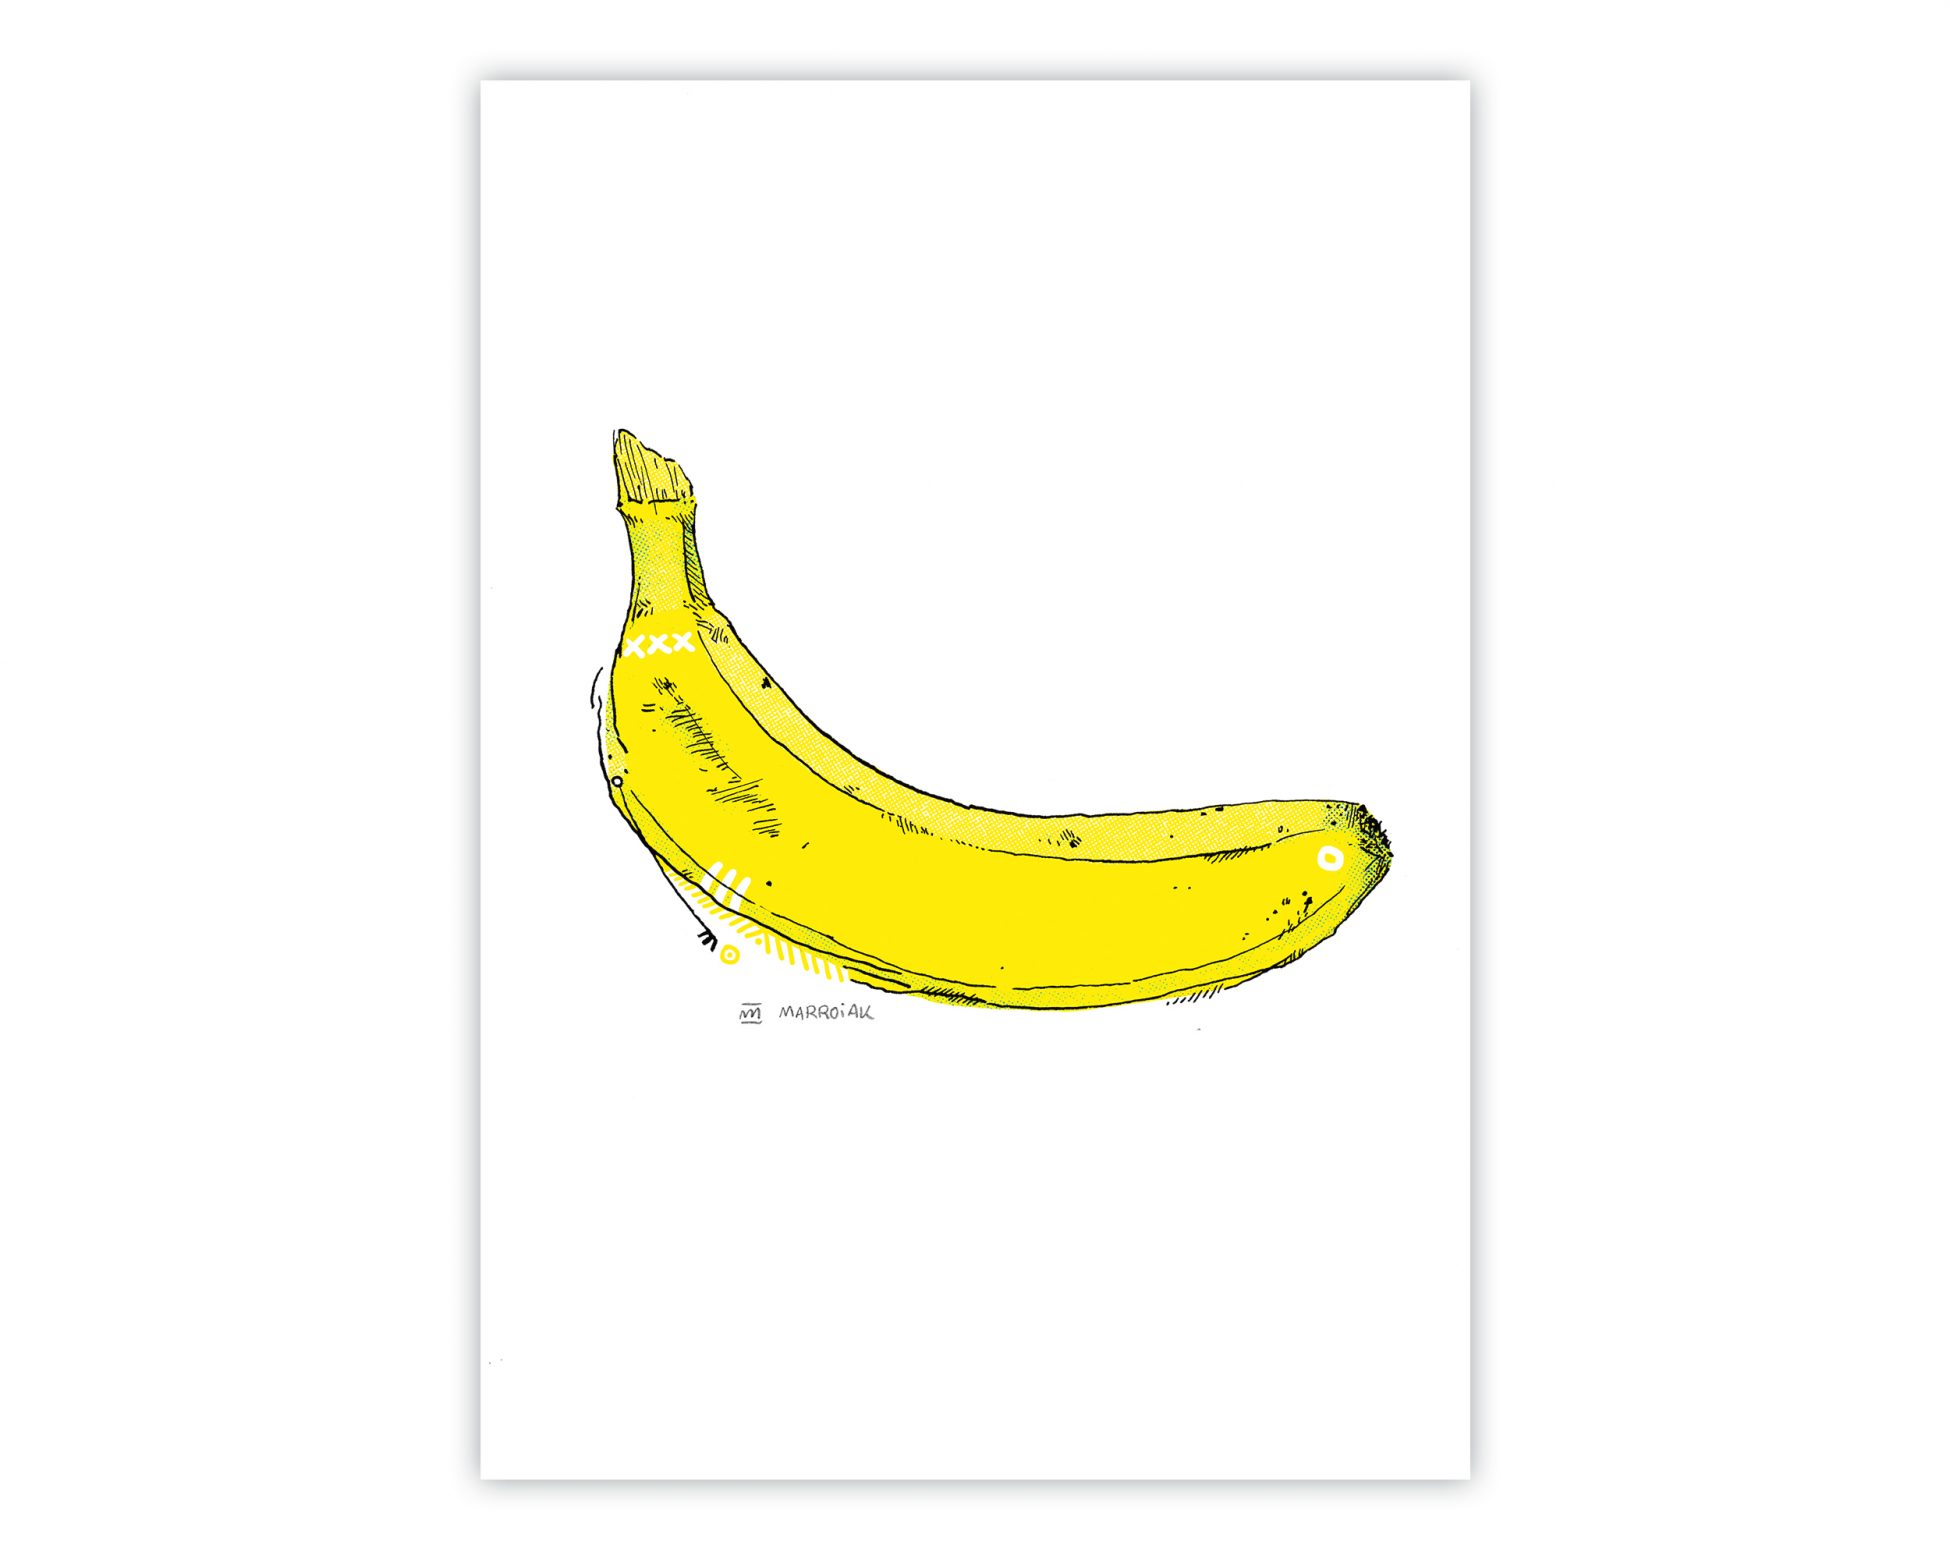 Venta online de una ilustración de una banana